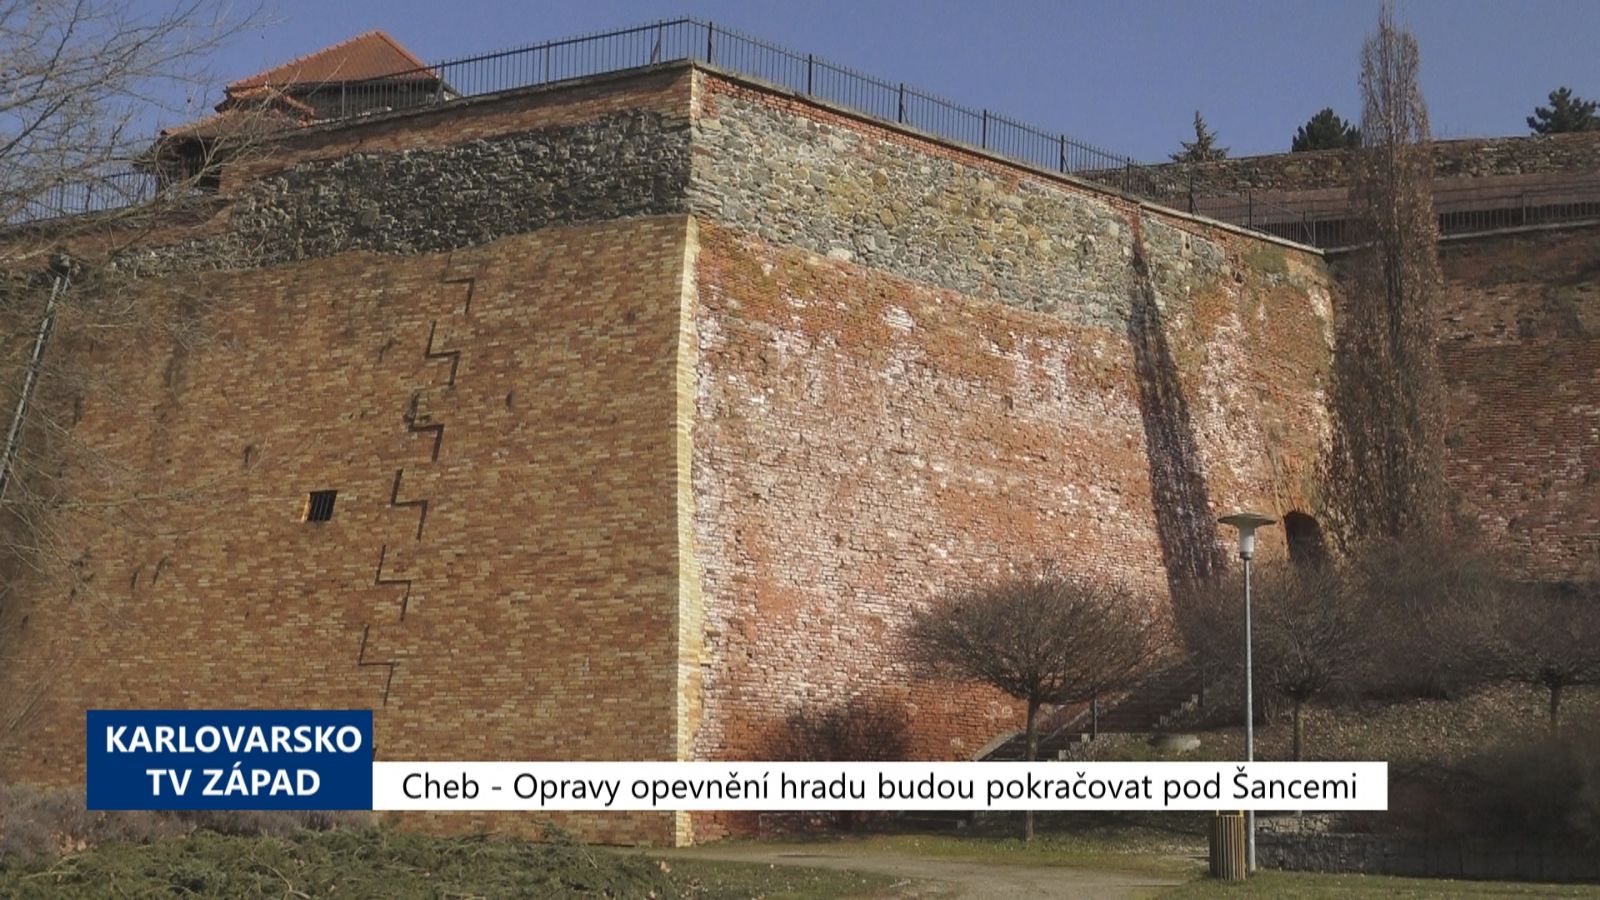 Cheb: Opravy opevnění hradu budou pokračovat pod Šancemi (TV Západ)